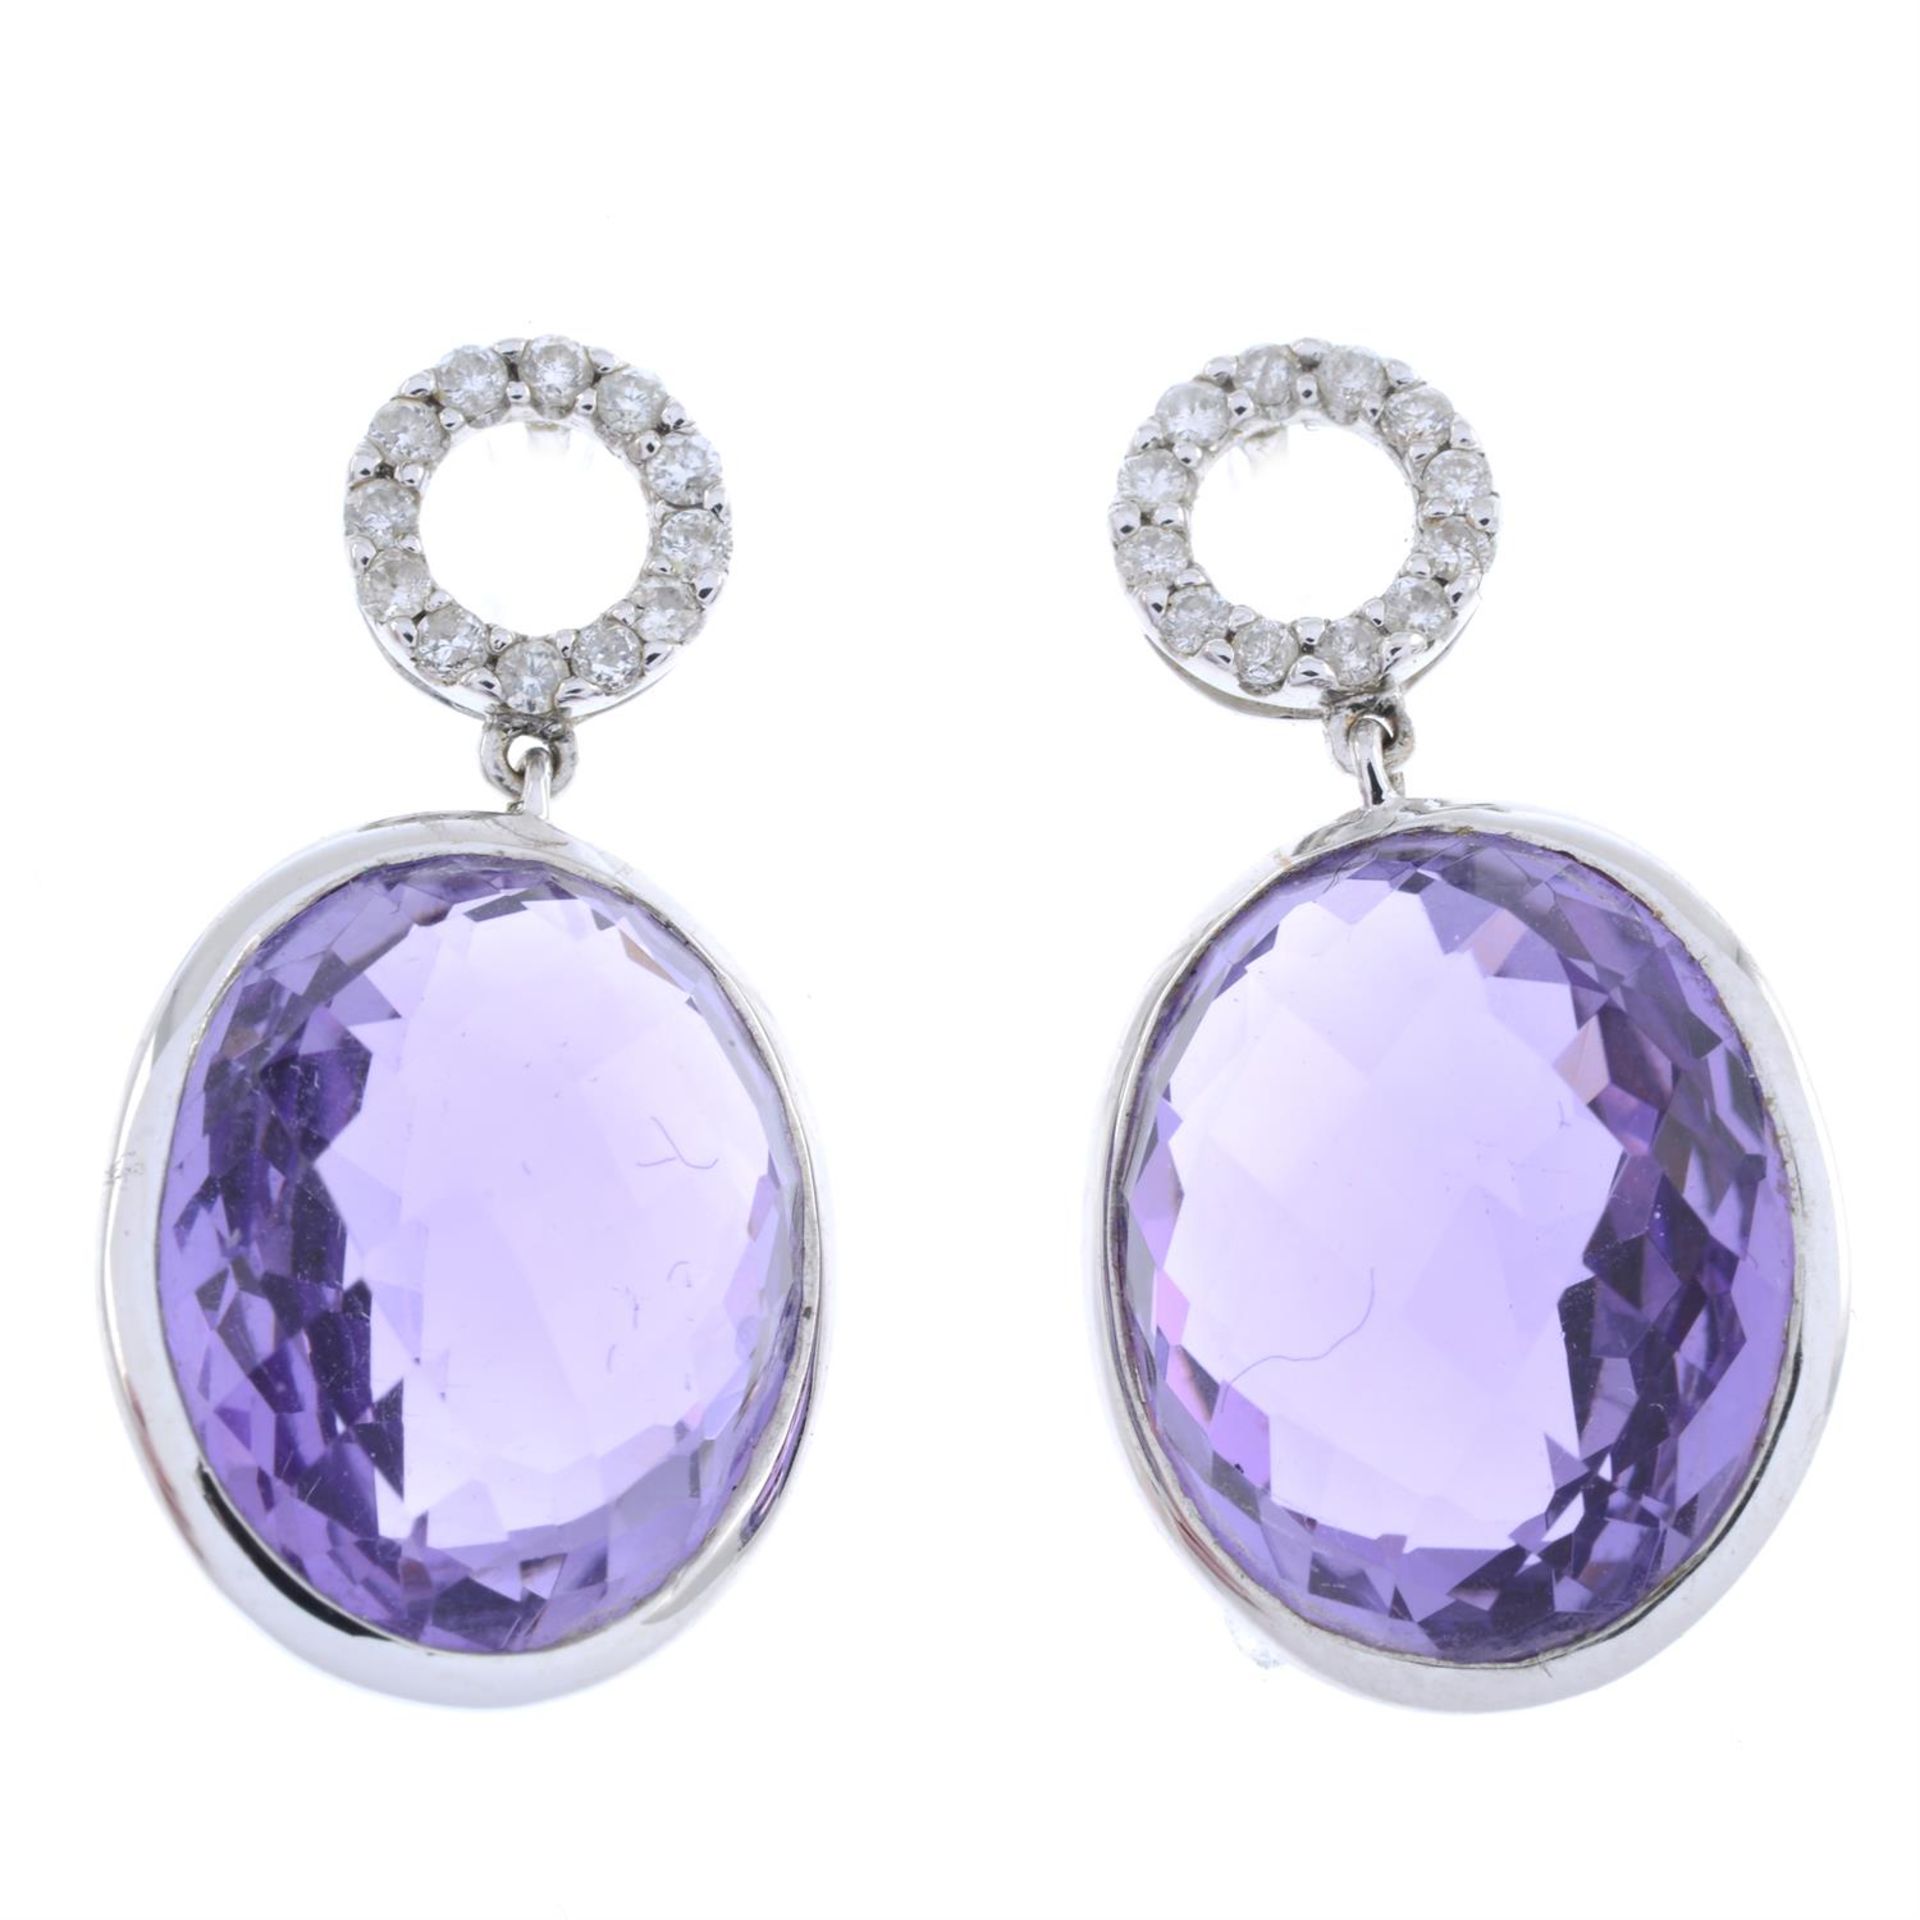 Amethyst & diamond drop earrings